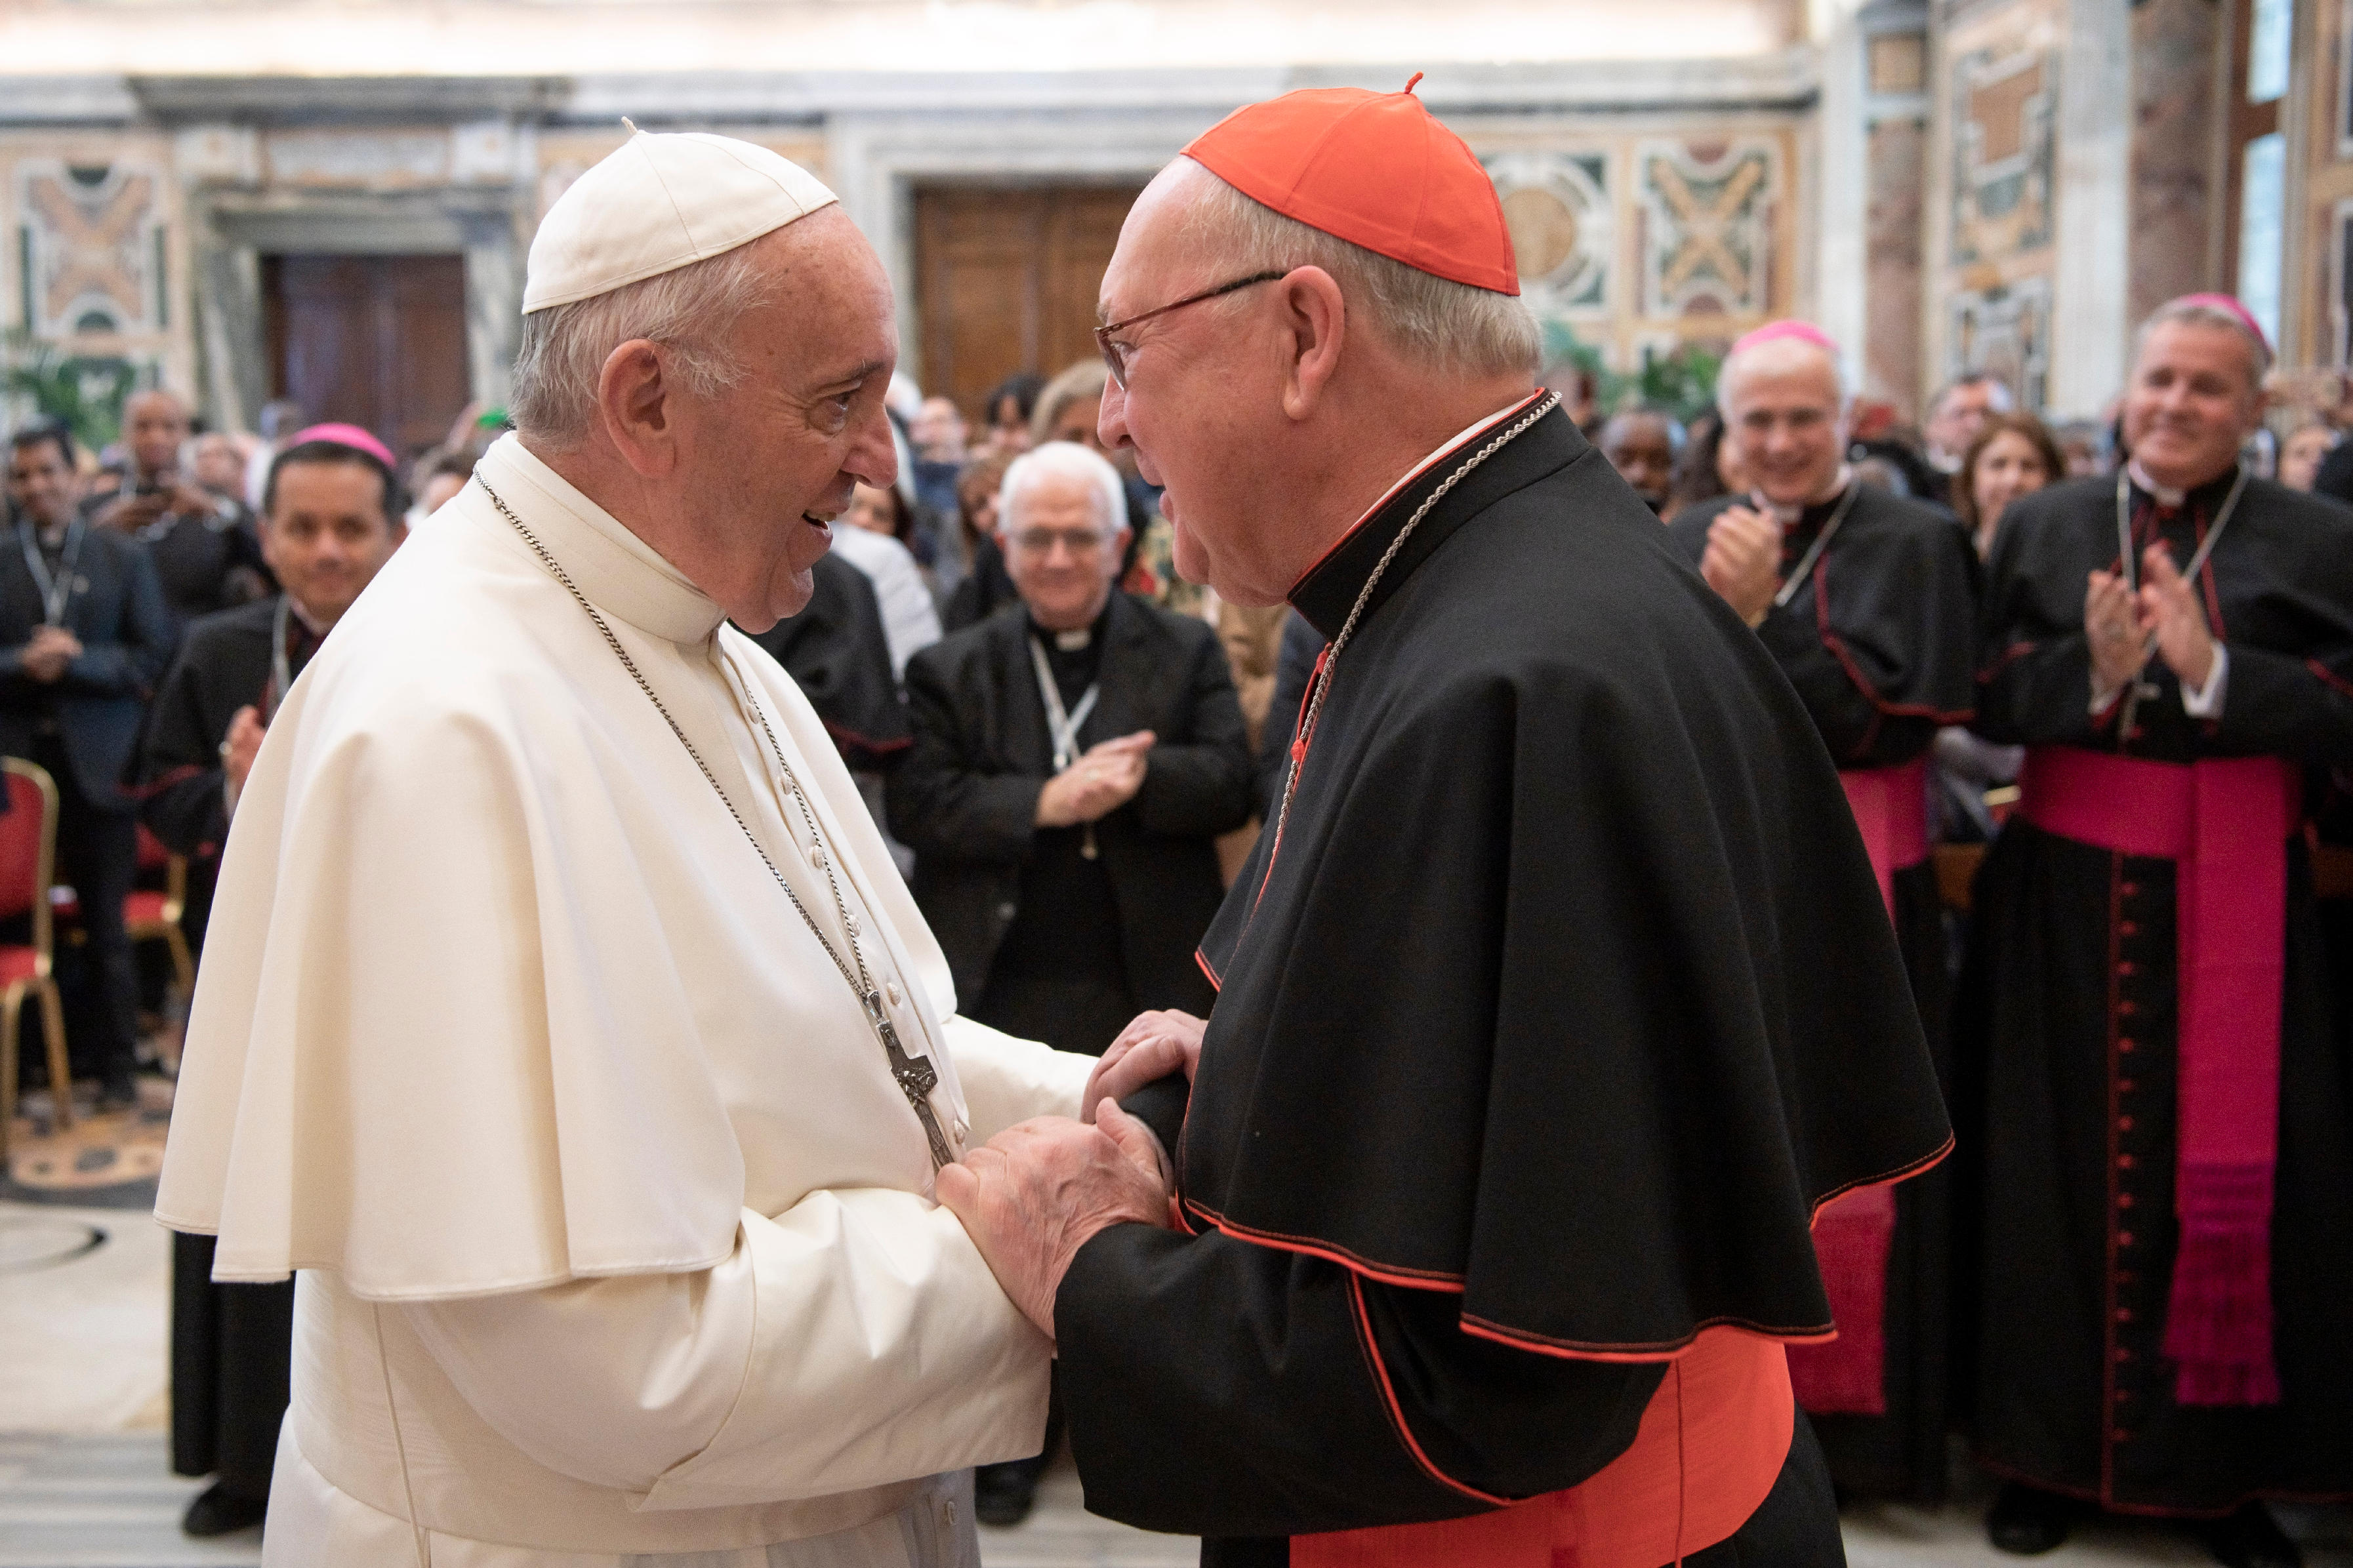 Cardinal Farrell, congrès du Dicastère pour les laïc, la famille et la vie © Vatican Media